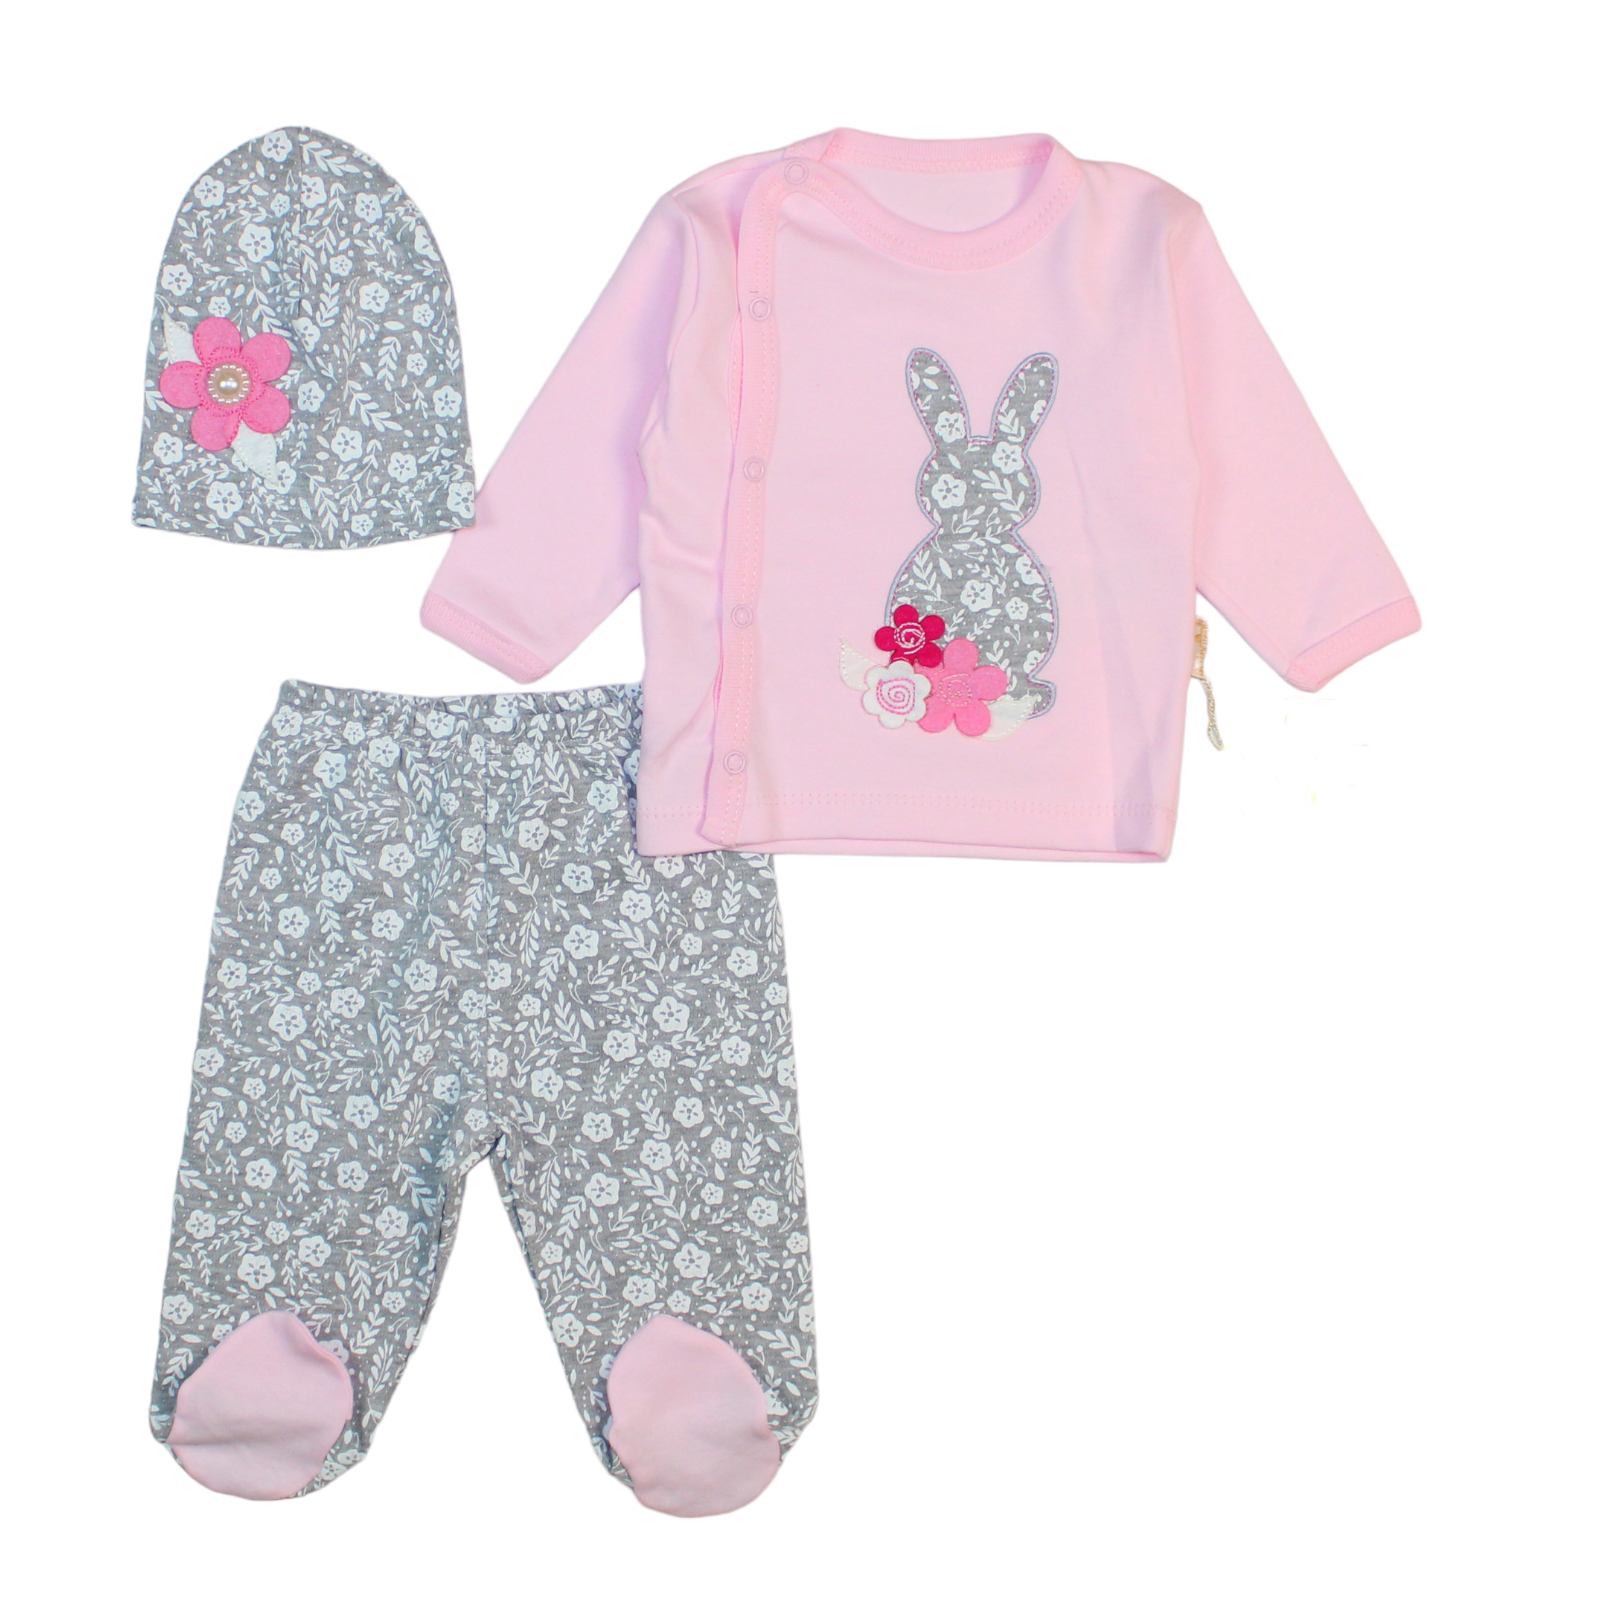 ست 3 تکه لباس نوزادی مدل خرگوشی